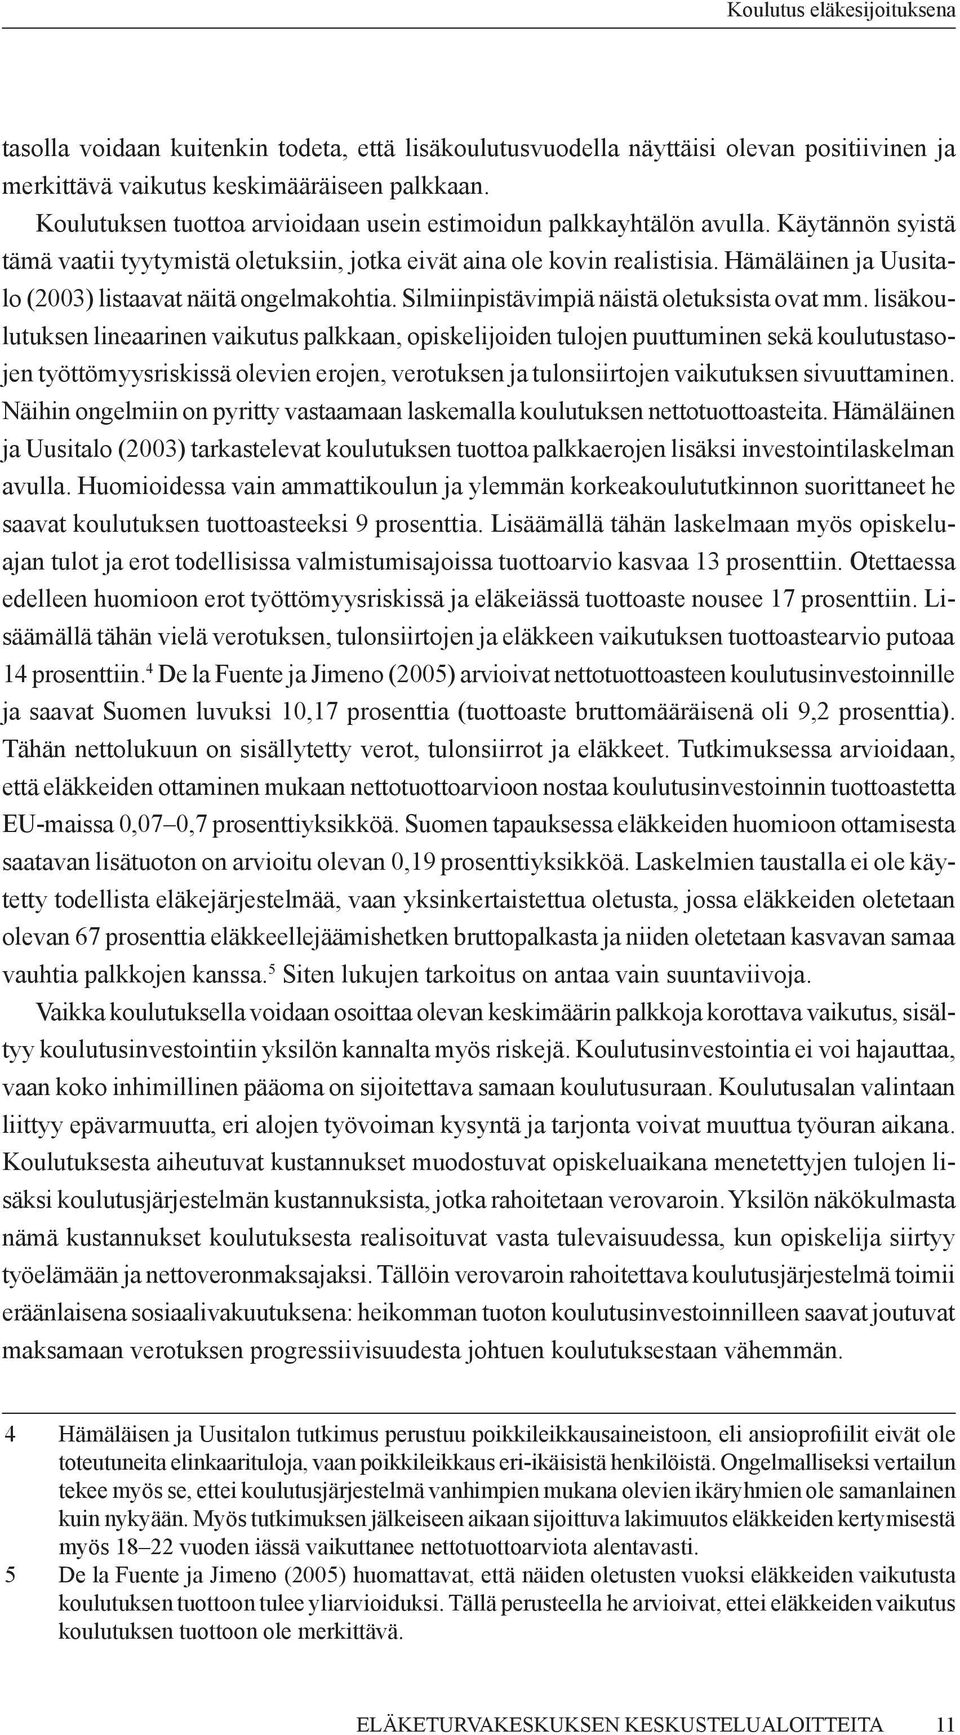 Hämäläinen ja Uusitalo (2003) listaavat näitä ongelmakohtia. Silmiinpistävimpiä näistä oletuksista ovat mm.